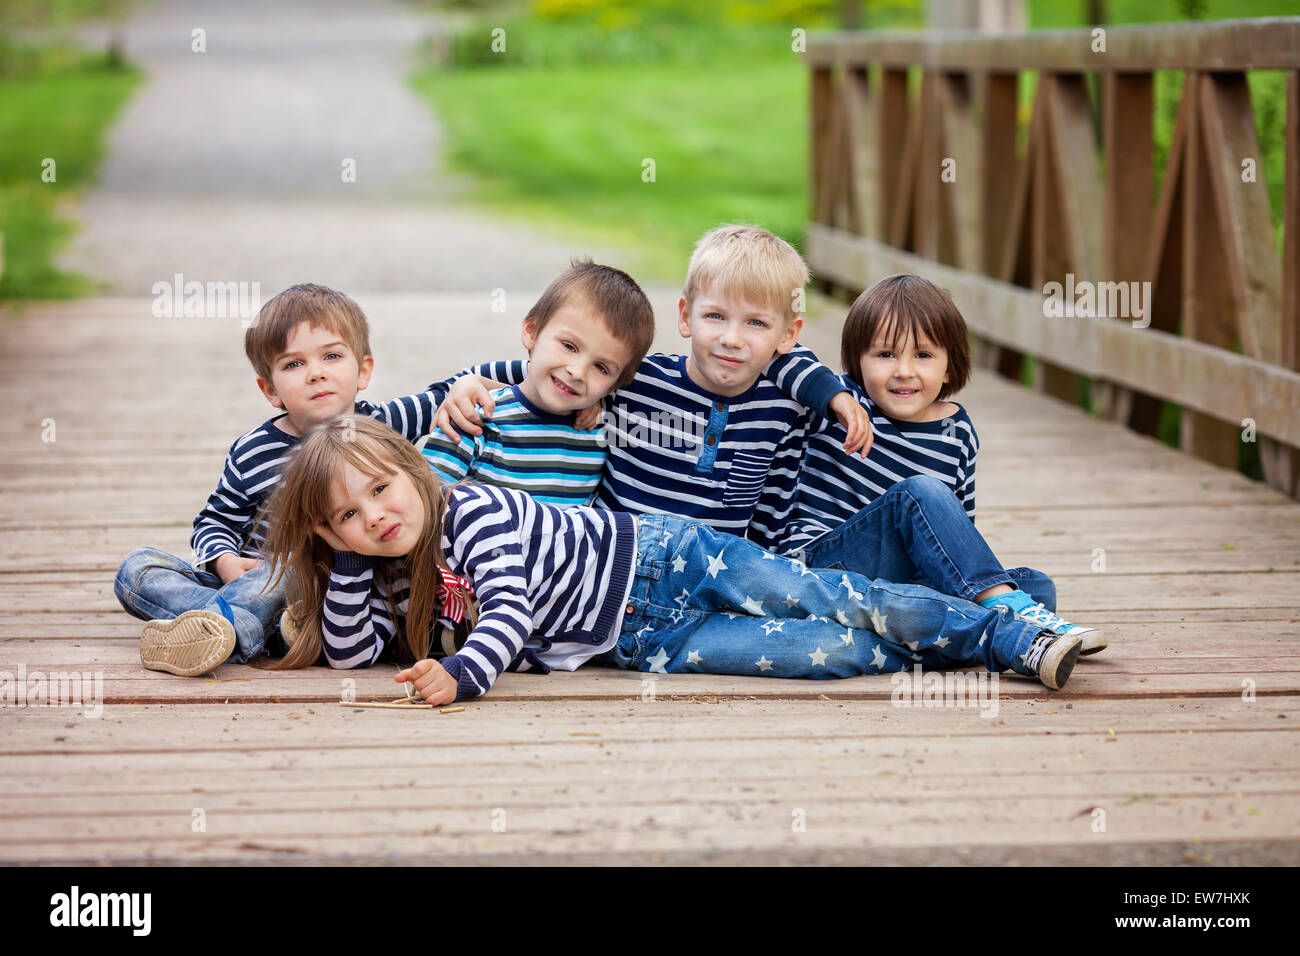 Fünf bezaubernde Kinder, gekleidet in gestreiften Hemden, sitzen auf einer Brücke im Park, Spaß Stockfoto